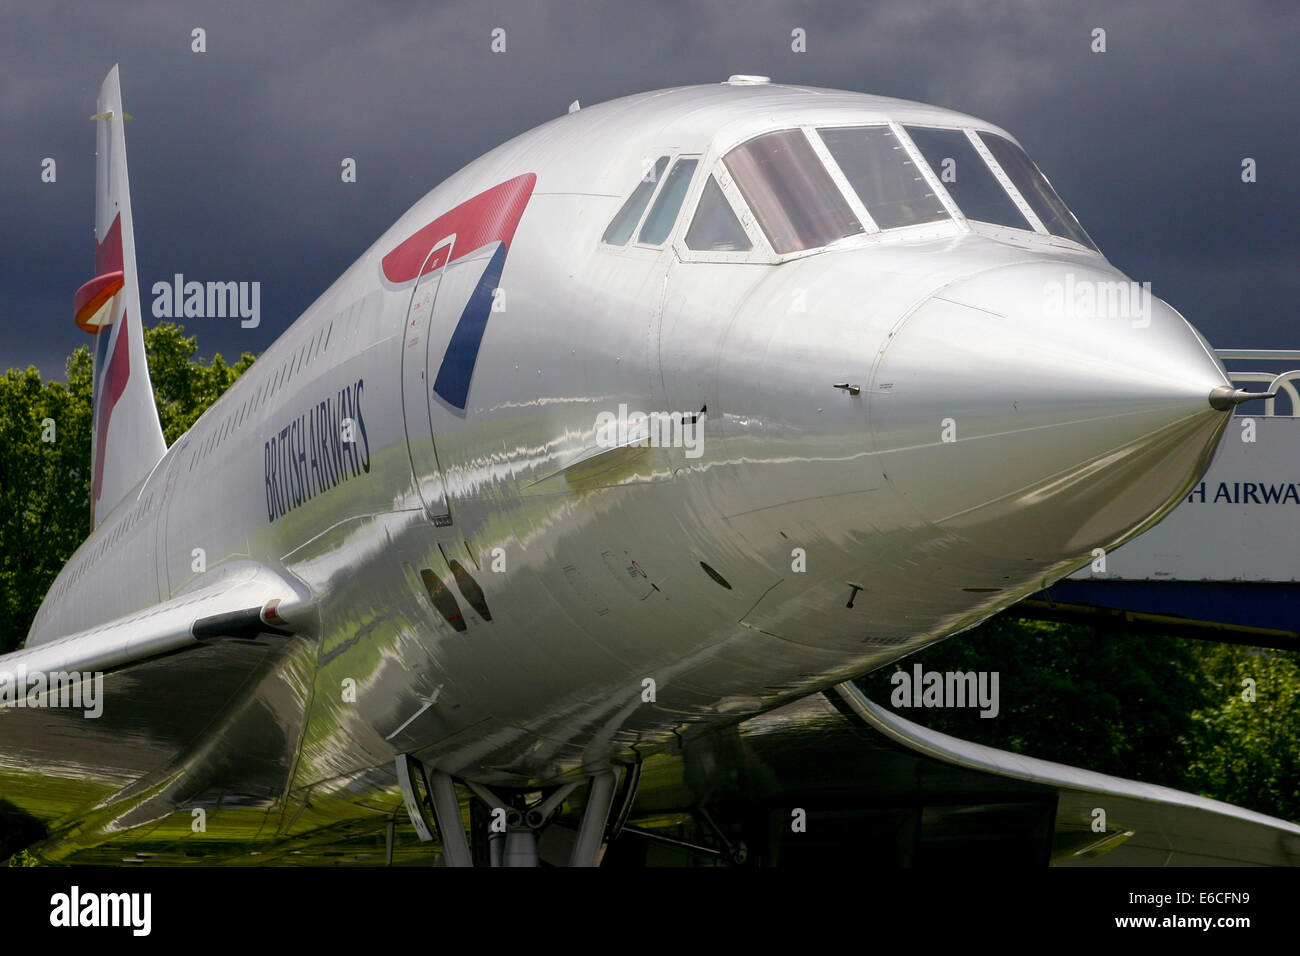 British Airways Concorde riposa in pace all'aeroporto di Manchester, come si avvicina un temporale. Foto Stock